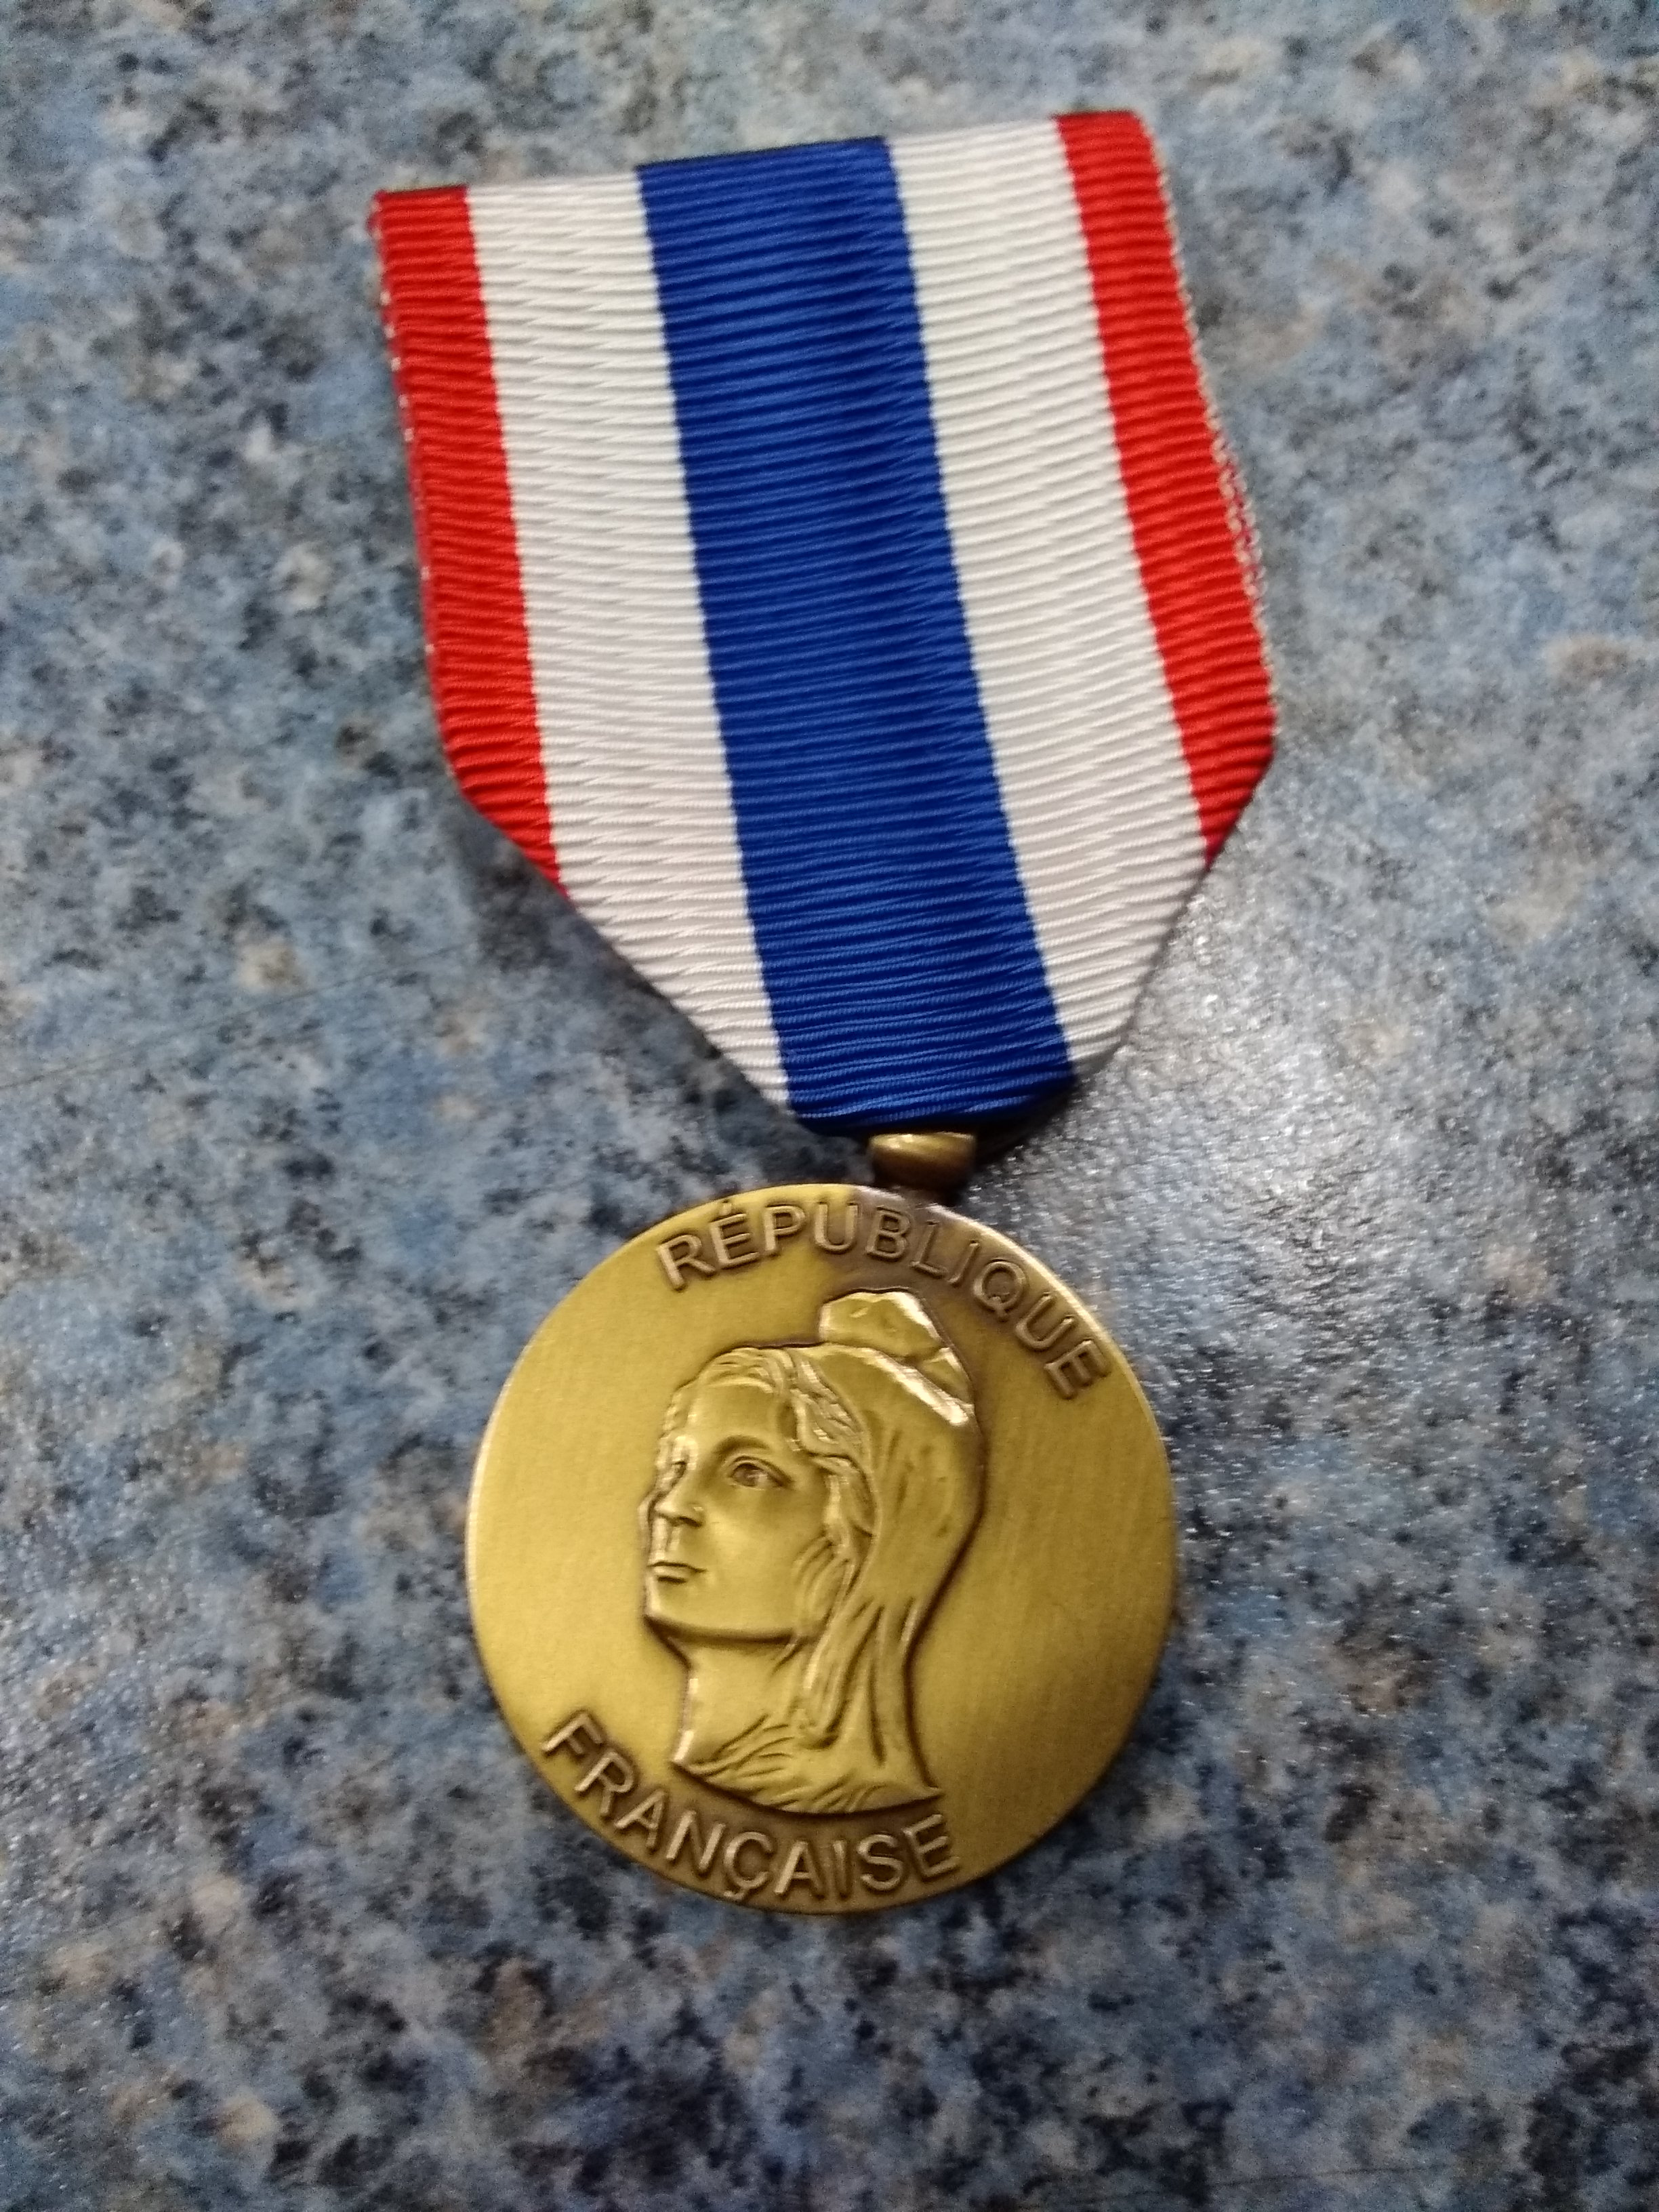 Médaille de la Protection militaire du territoire - Insigne